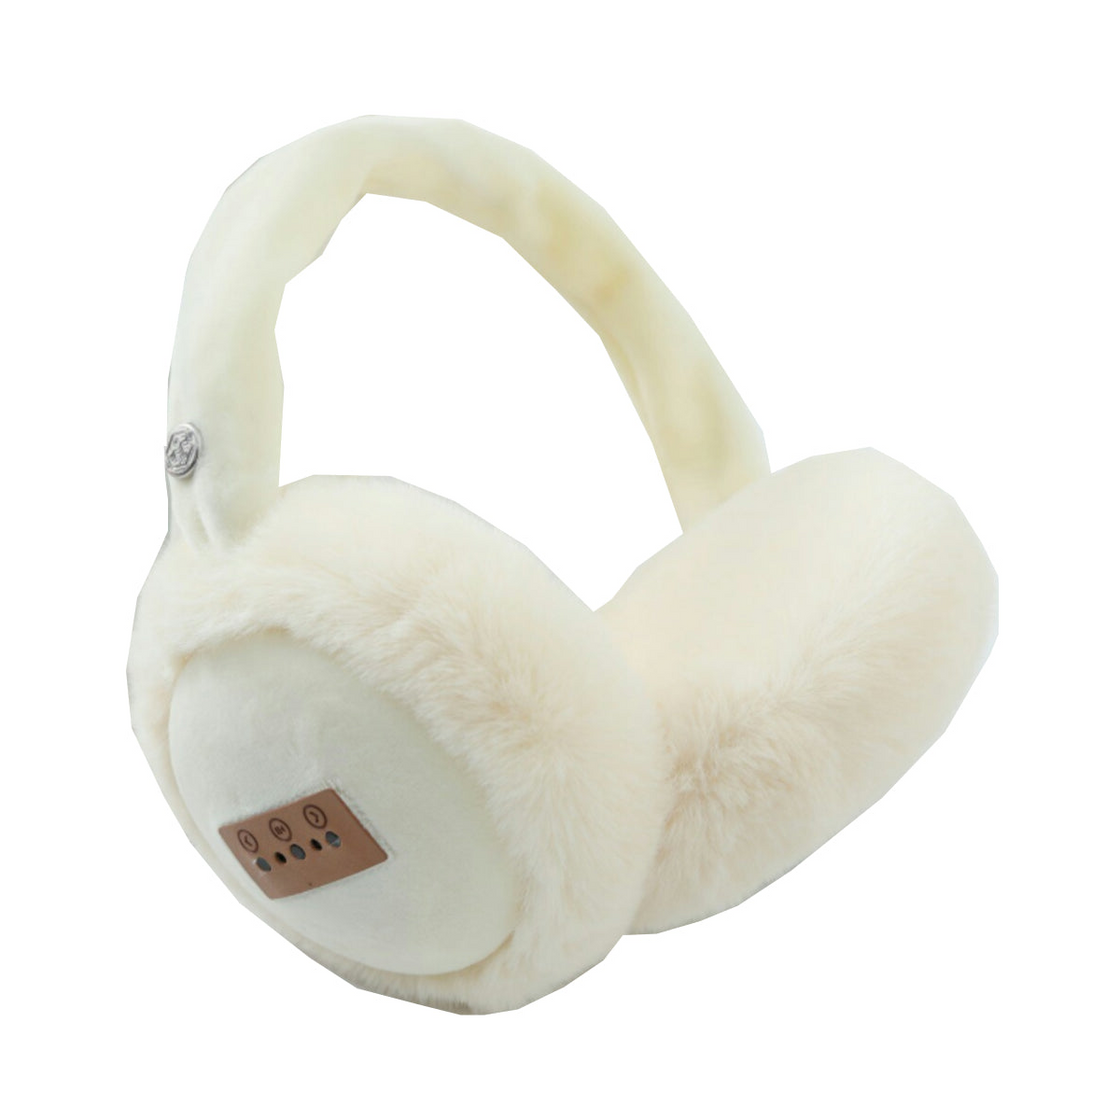 Fuzzy Wuzzy Bluetooth Headphones - Cozy and Versatile Headphones